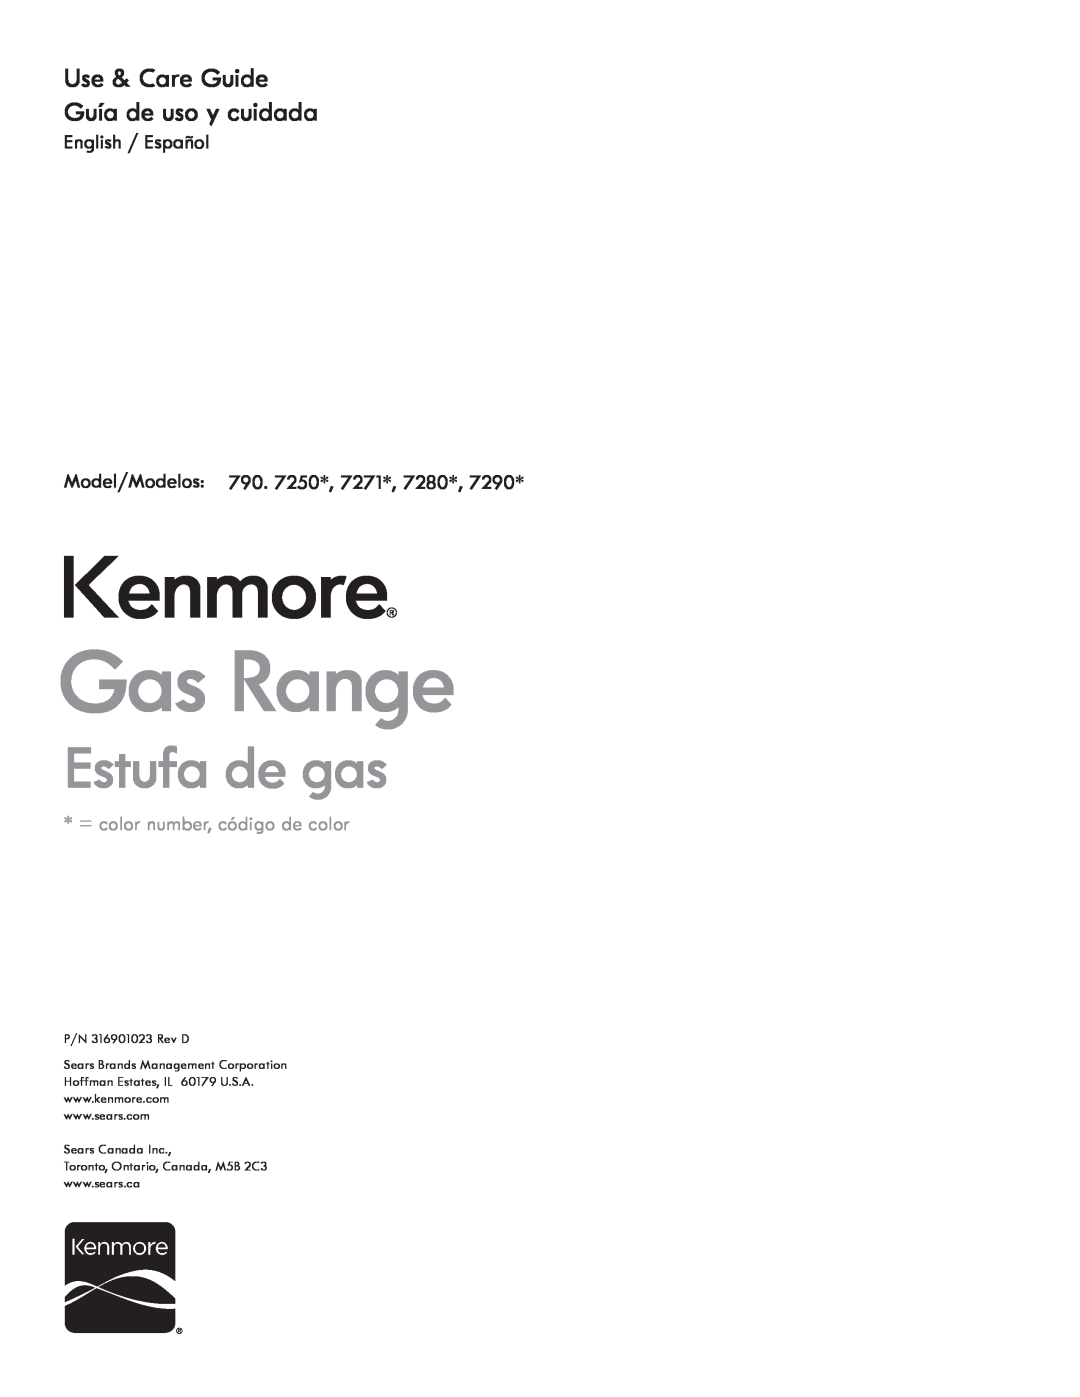 Kenmore 7280 manual Use & Care Guide Guía de uso y cuidada, English / Español Model/Modelos 790. 7250*, 7271, Kenmore 